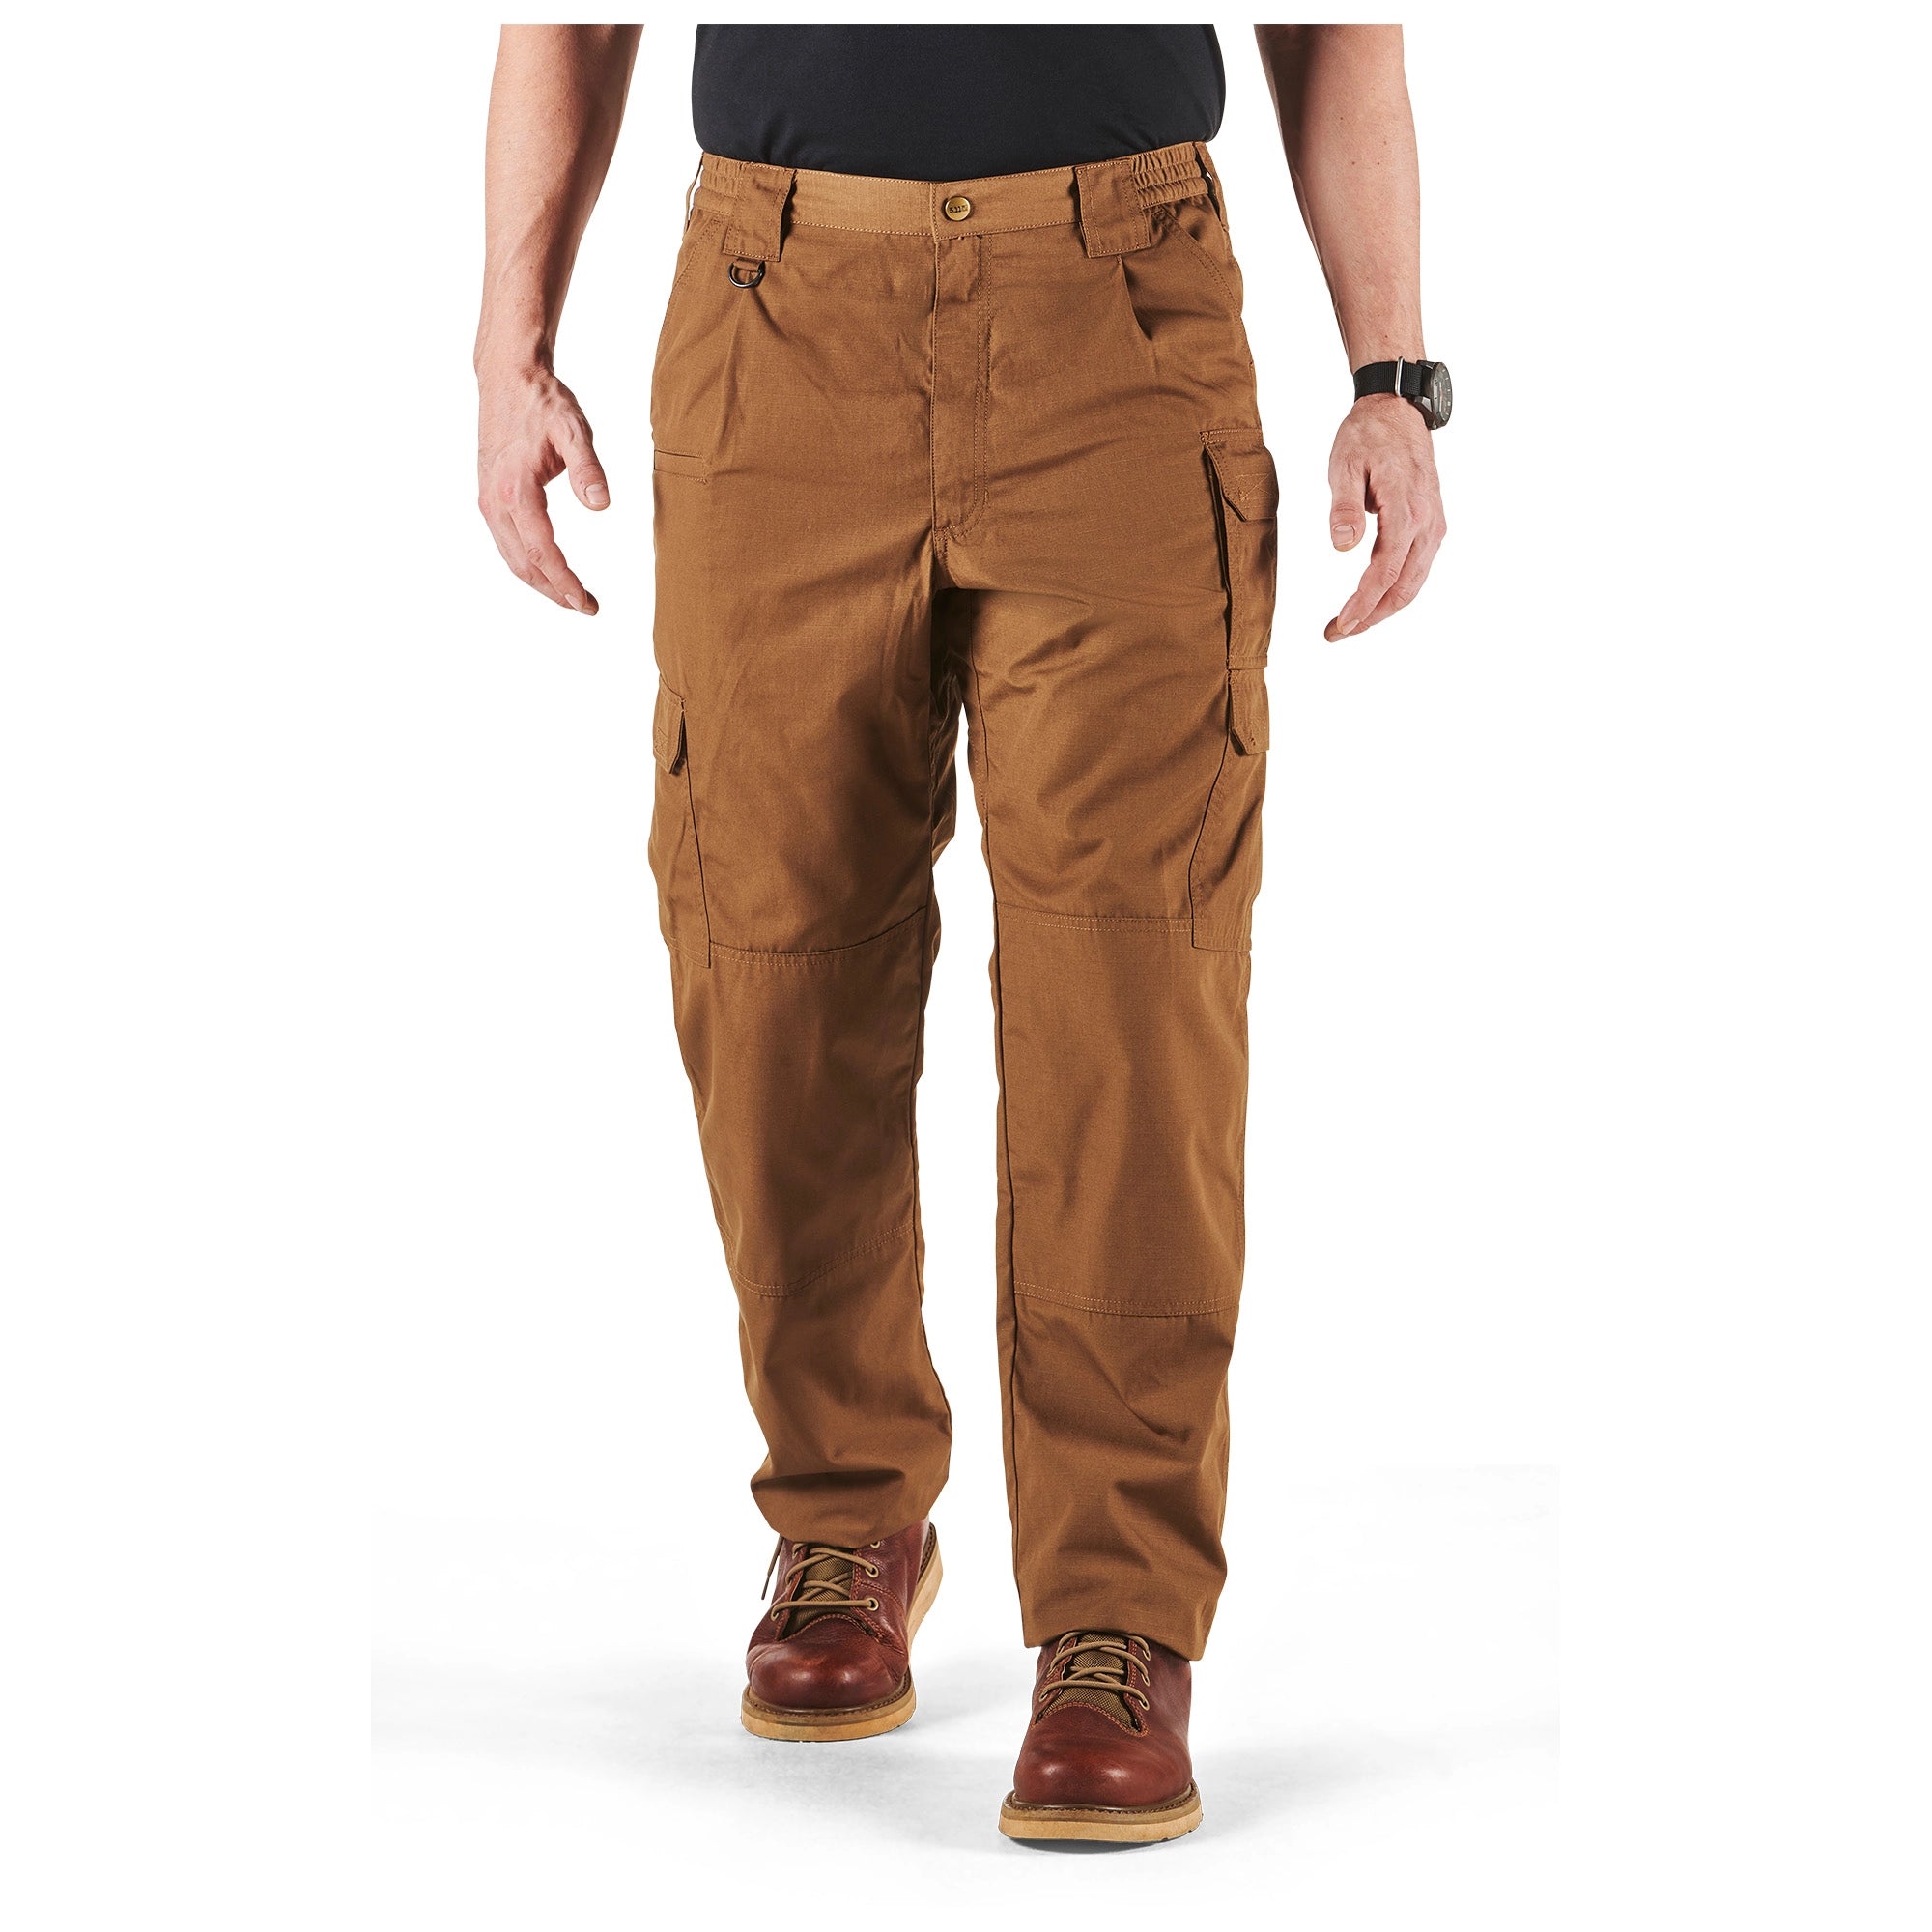 5.11 Men's TACLITE Pro Tactical Pants, Style 74273, Waist 28-44